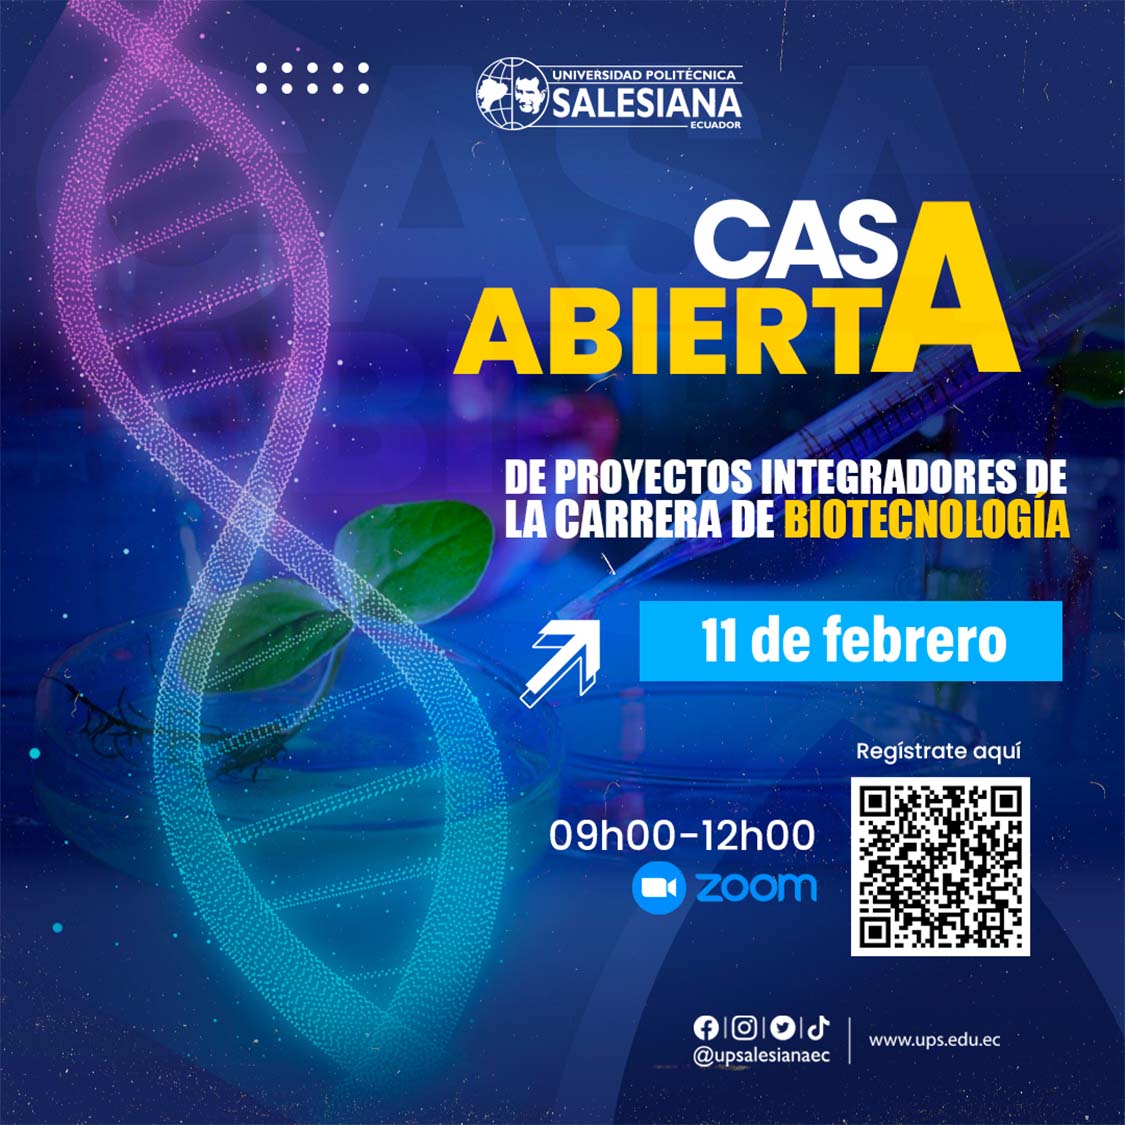 Afiche promocional del la Casa abierta de proyectos integradores de la carrera de Biotecnología